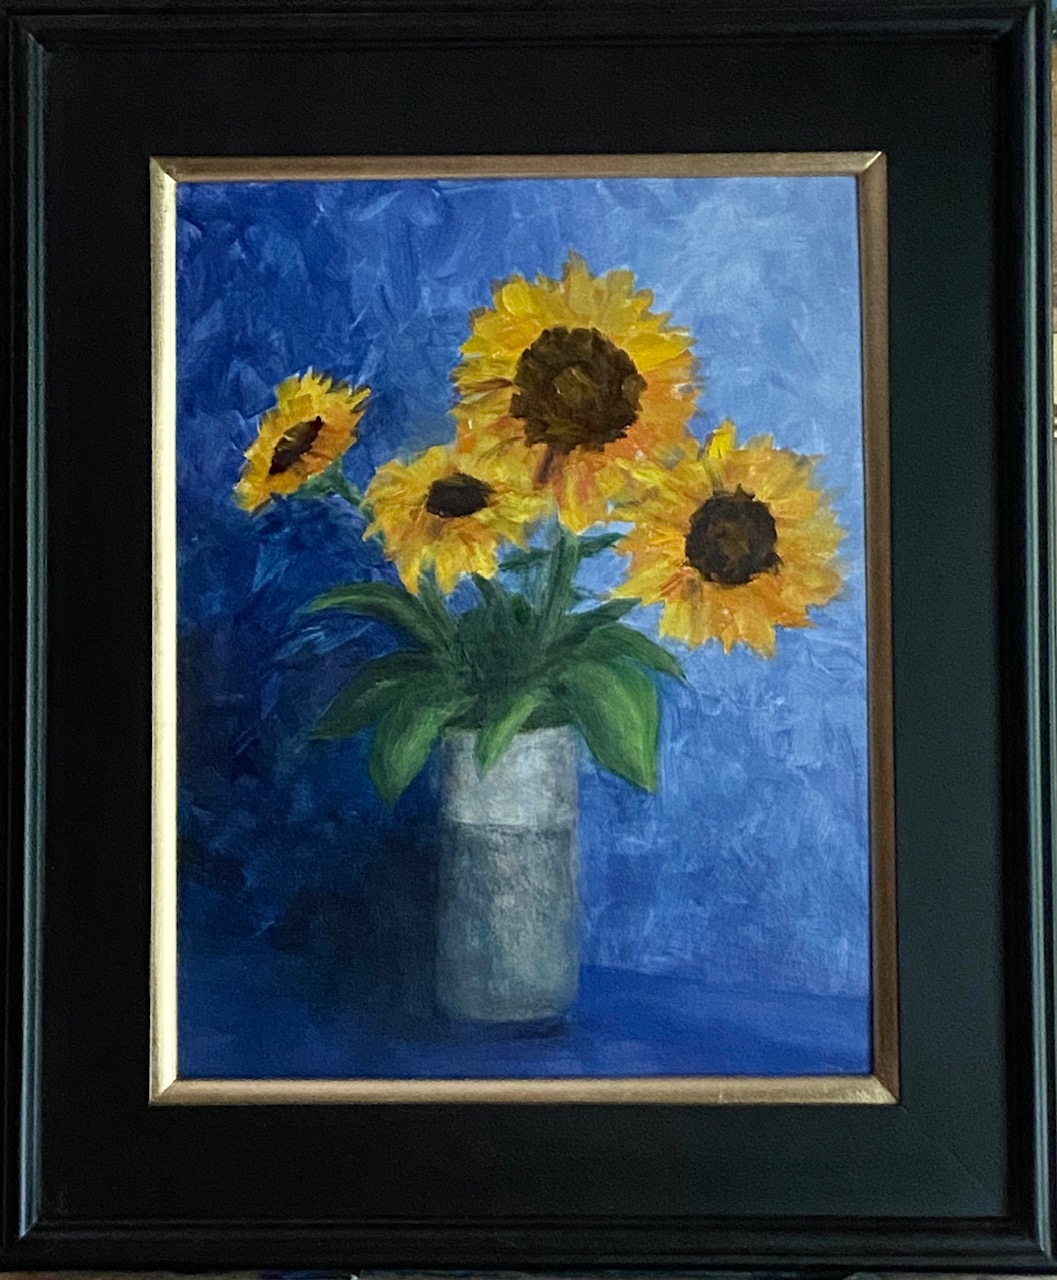 221 - August Sunflowers - 14x18 - Still Life - $375